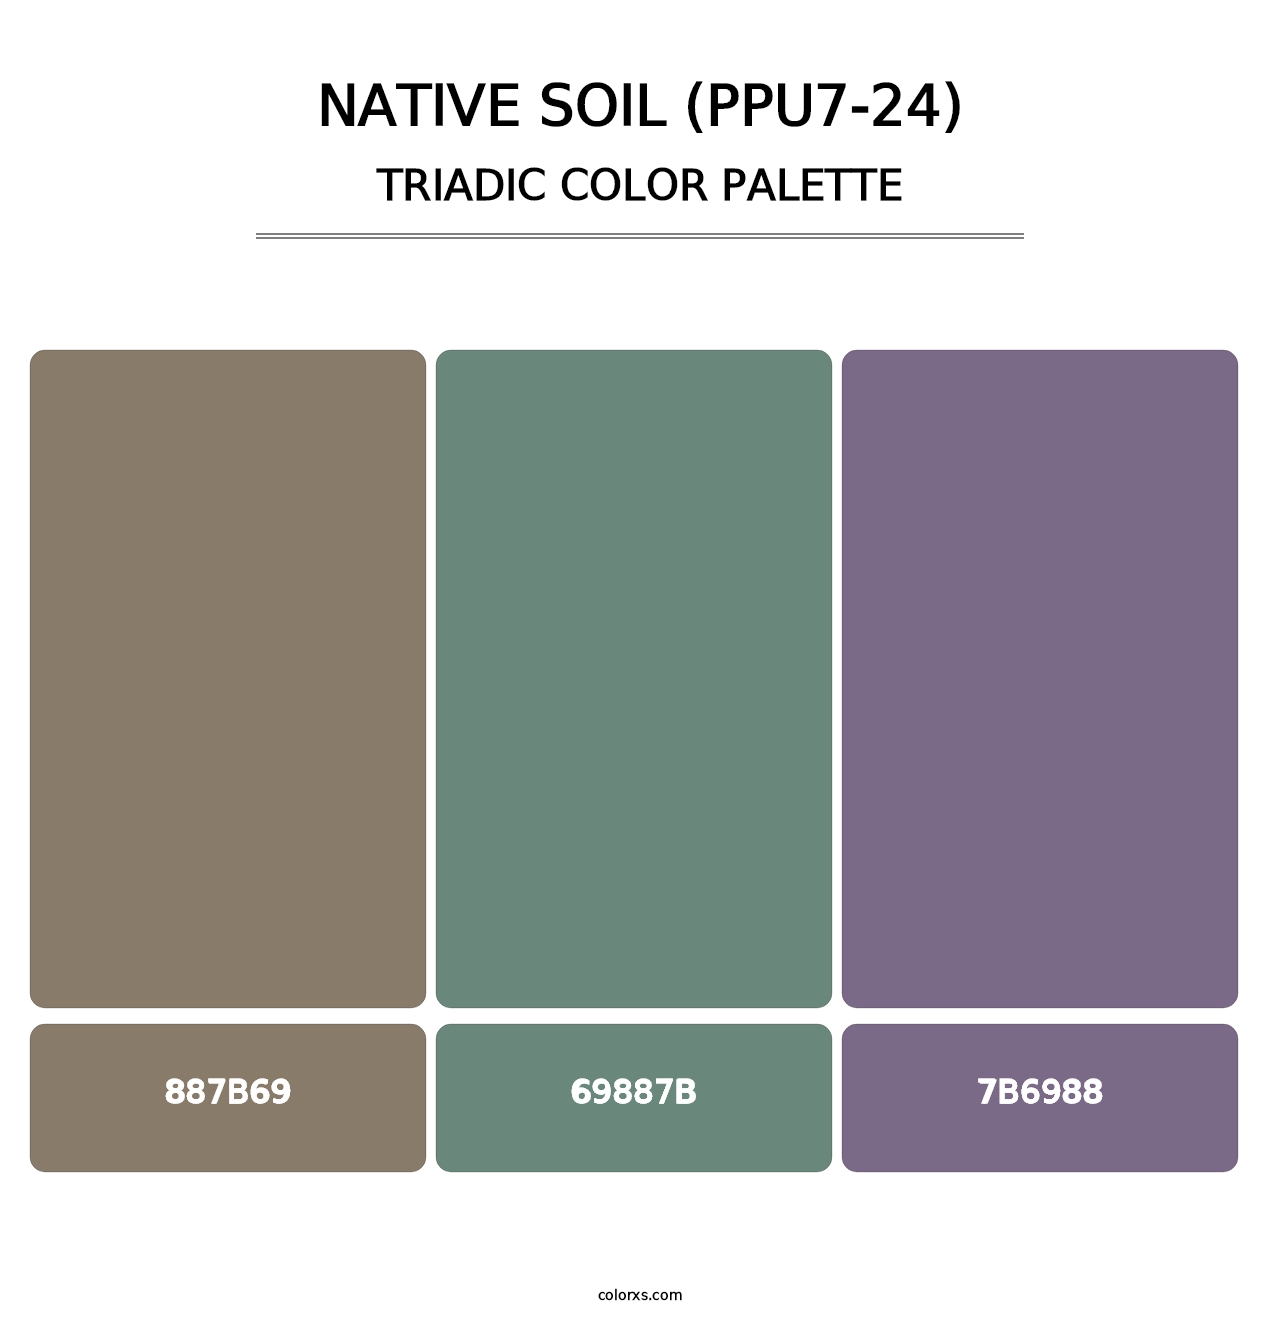 Native Soil (PPU7-24) - Triadic Color Palette